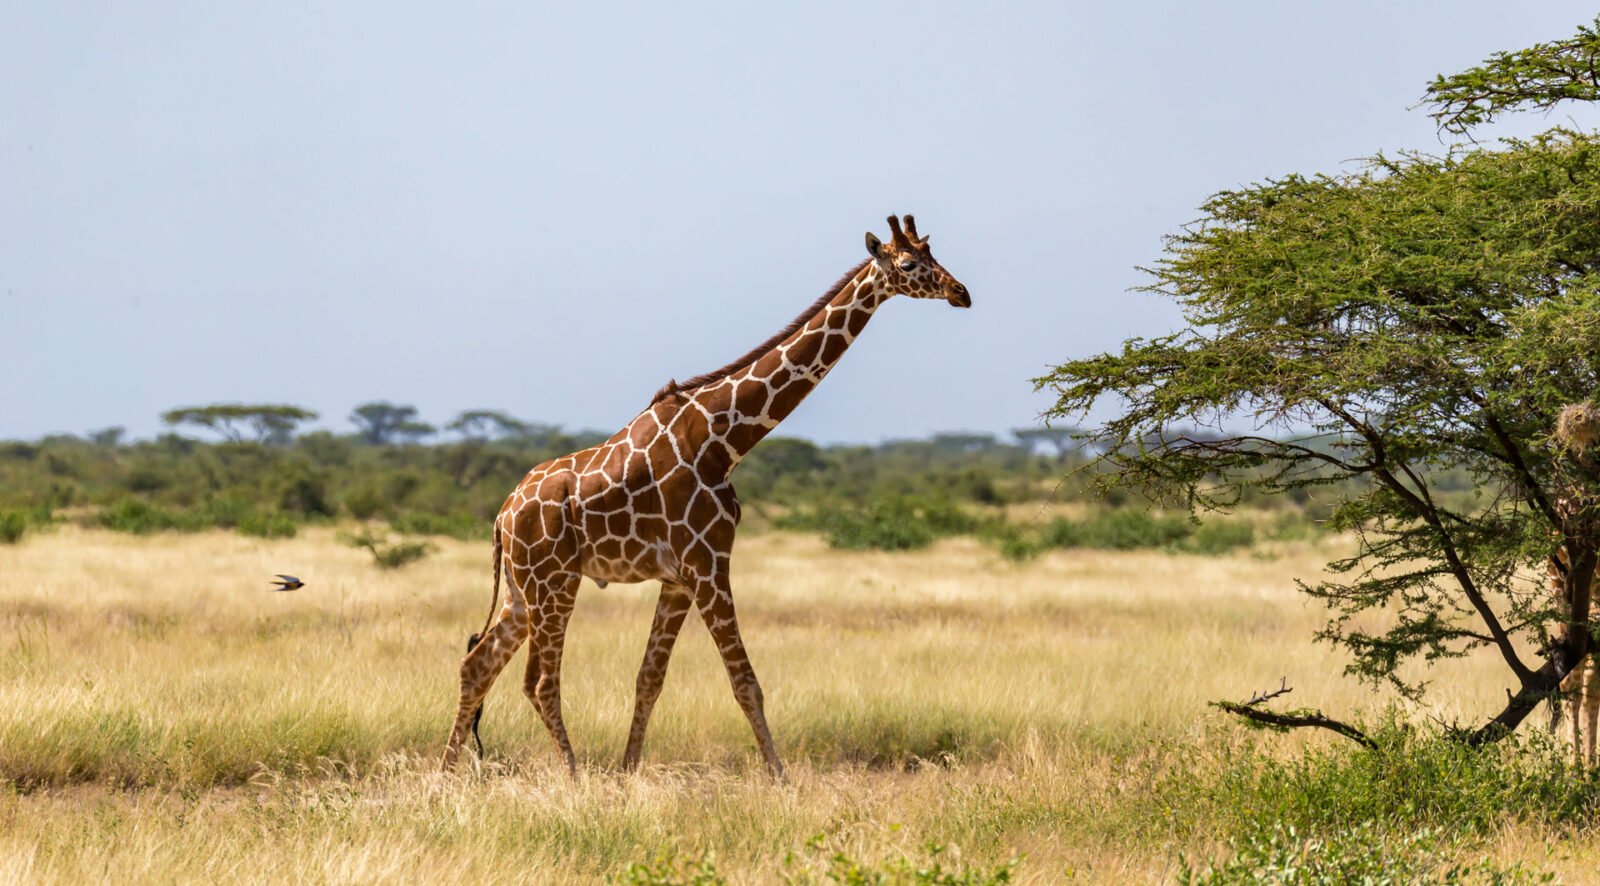 giraffe walk through savannah plants